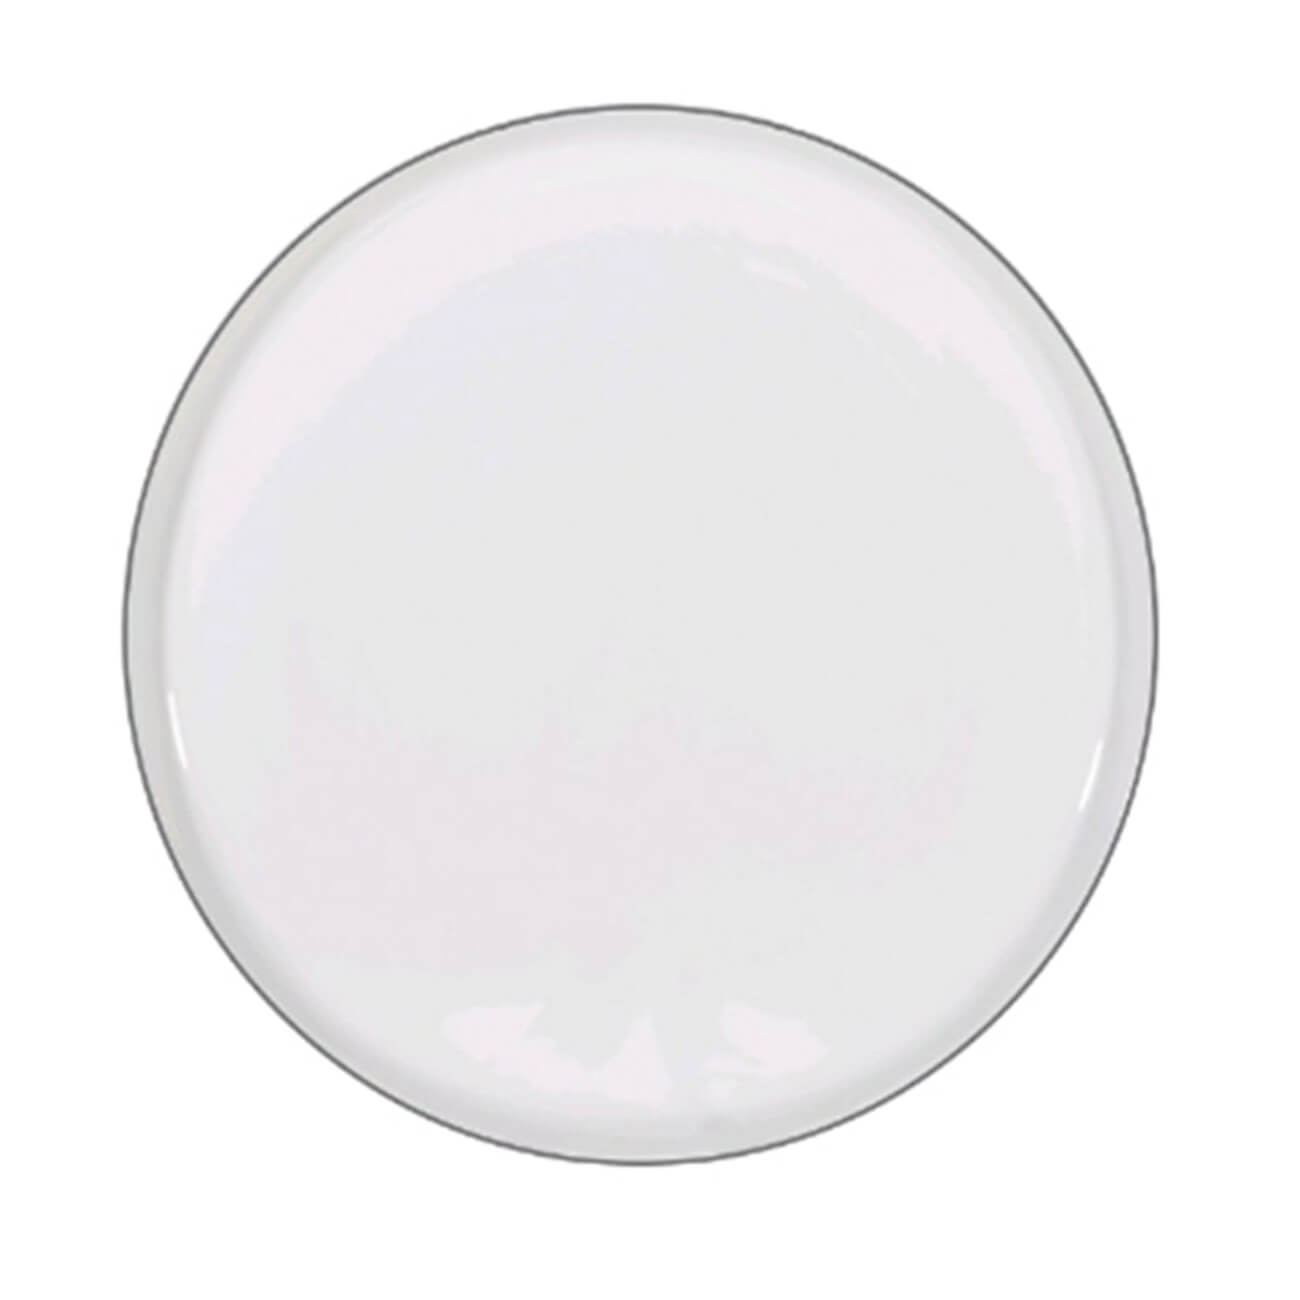 Тарелка десертная, 20 см, 2 шт, фарфор F, белая, Ideal silver тарелка десертная noritake монтвейл 16 5 см